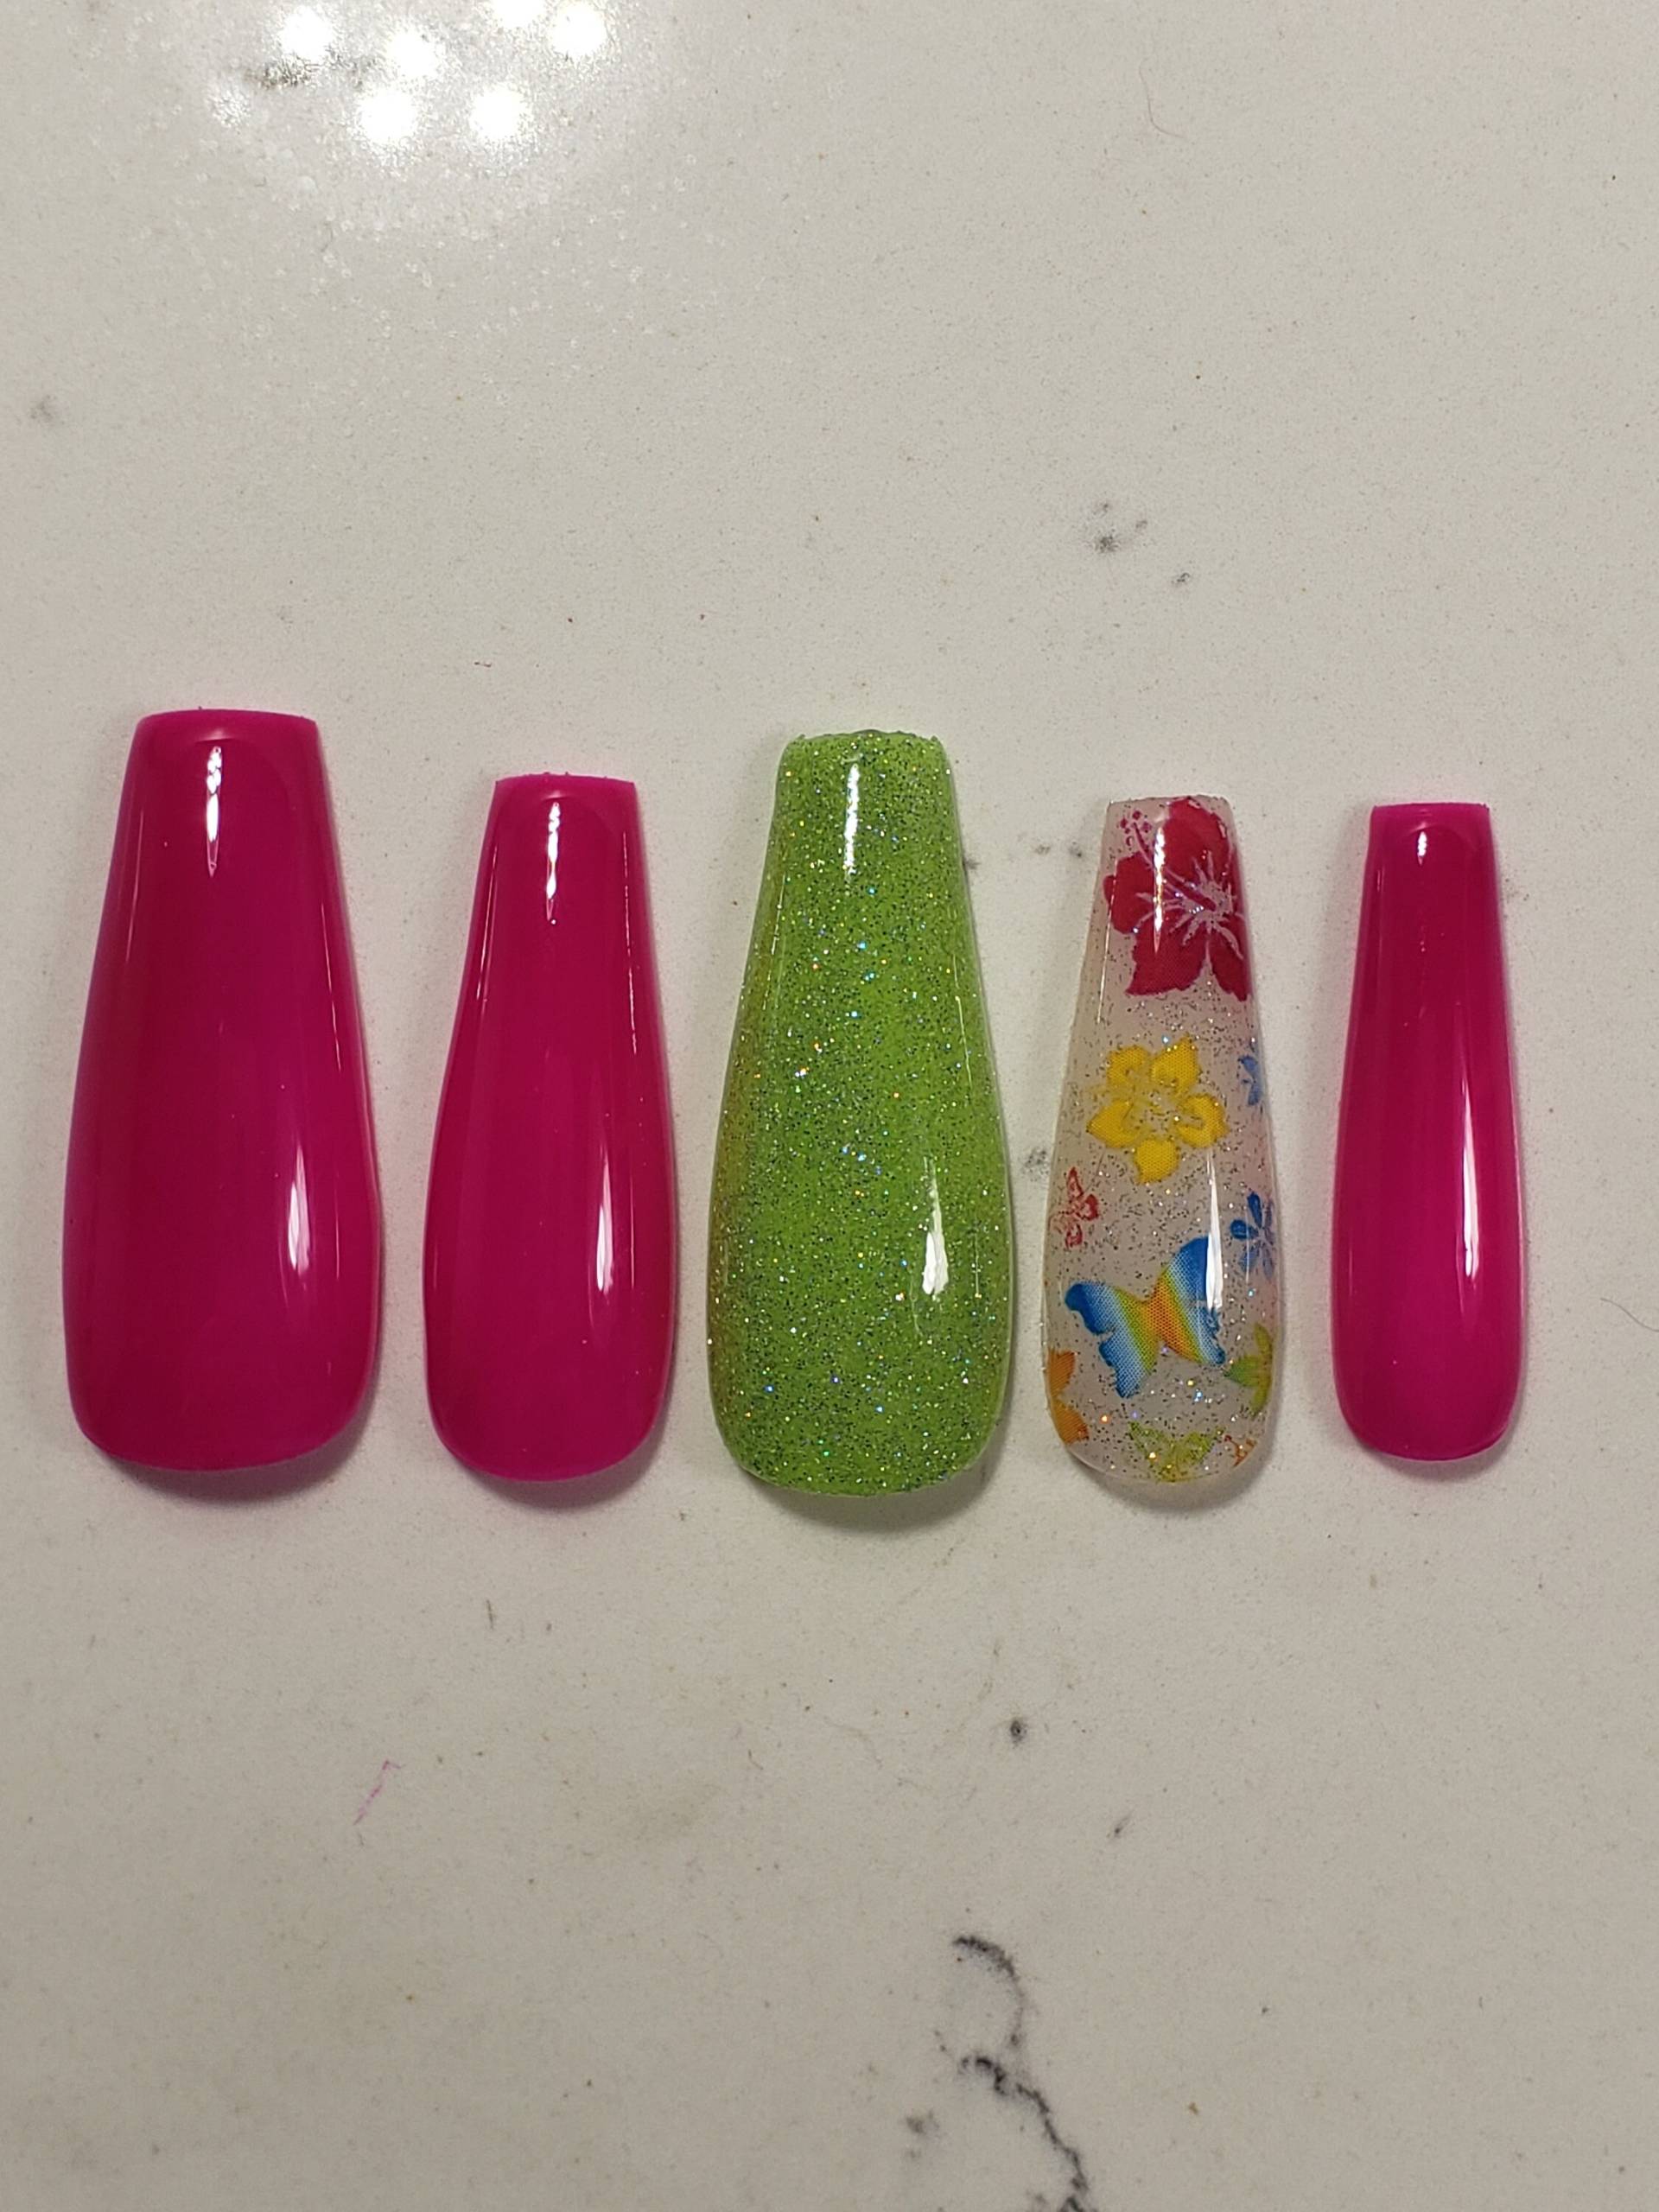 Sommer Neon Custom Gel Press On Nails Handarbeit 10 Stk. Set Neon Pink Grün Glitzer Schmetterling Blume von PolishedPressed